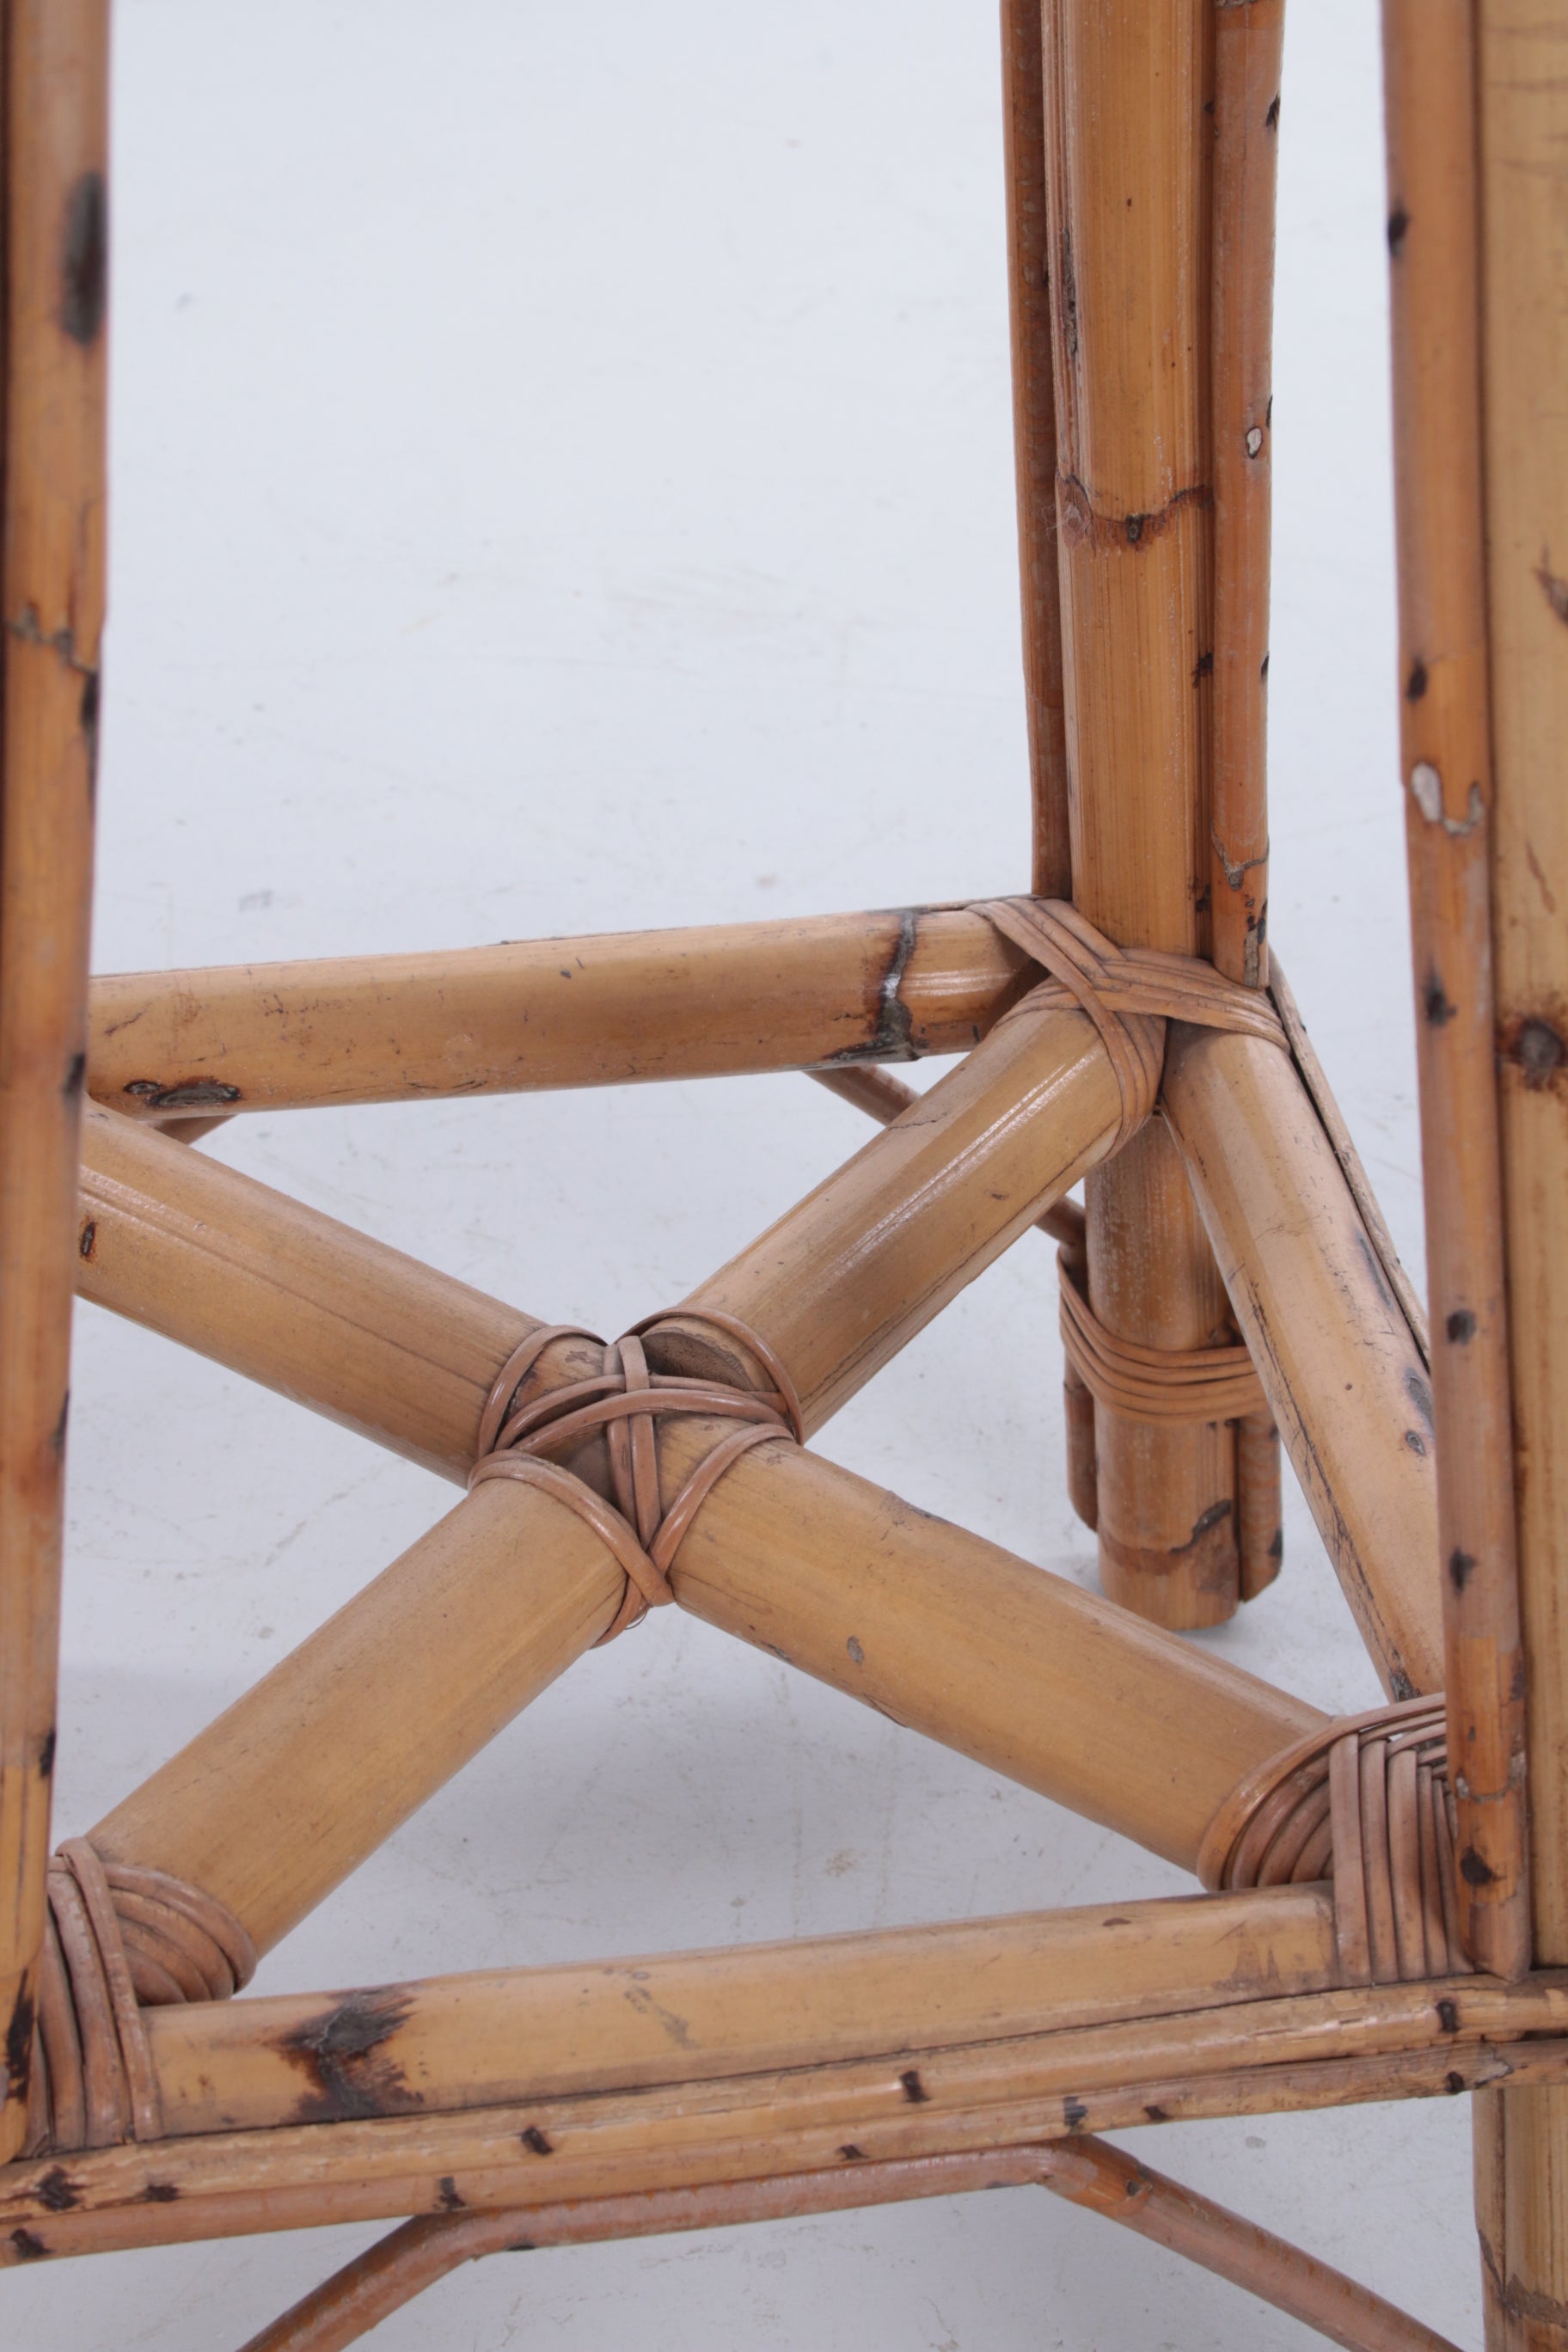 Vintage Bamboe Tiki Bar met 2 barkrukken detail bamboe binnen barstoel